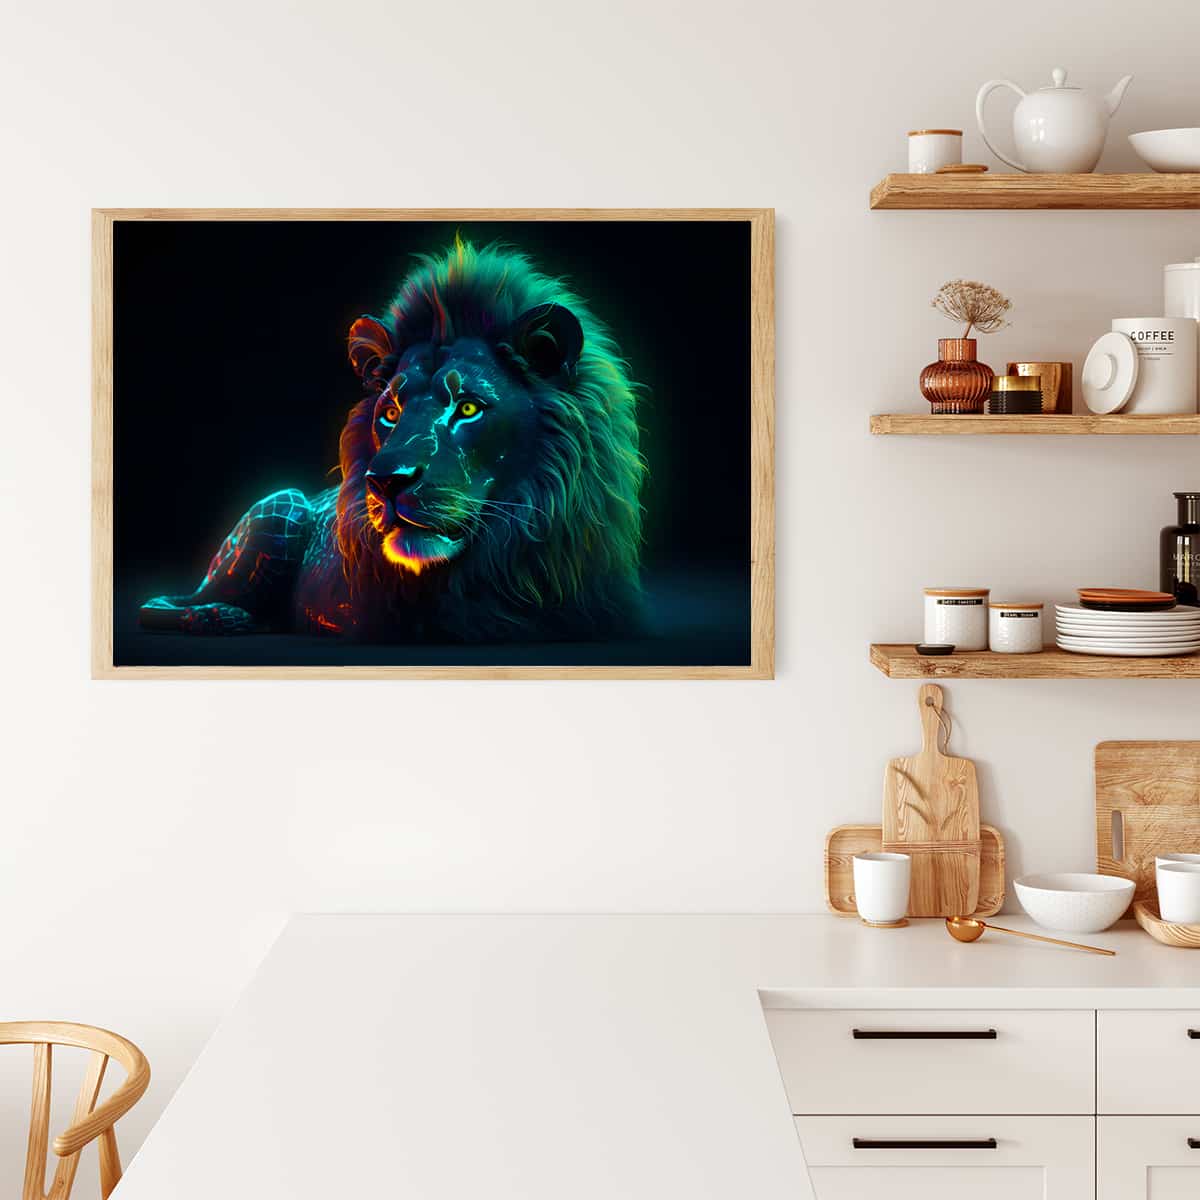 AB Diamond Painting - Löwe bei Nacht - gedruckt in Ultra-HD - AB Diamond, Horizontal, Löwe, Neu eingetroffen, Tiere